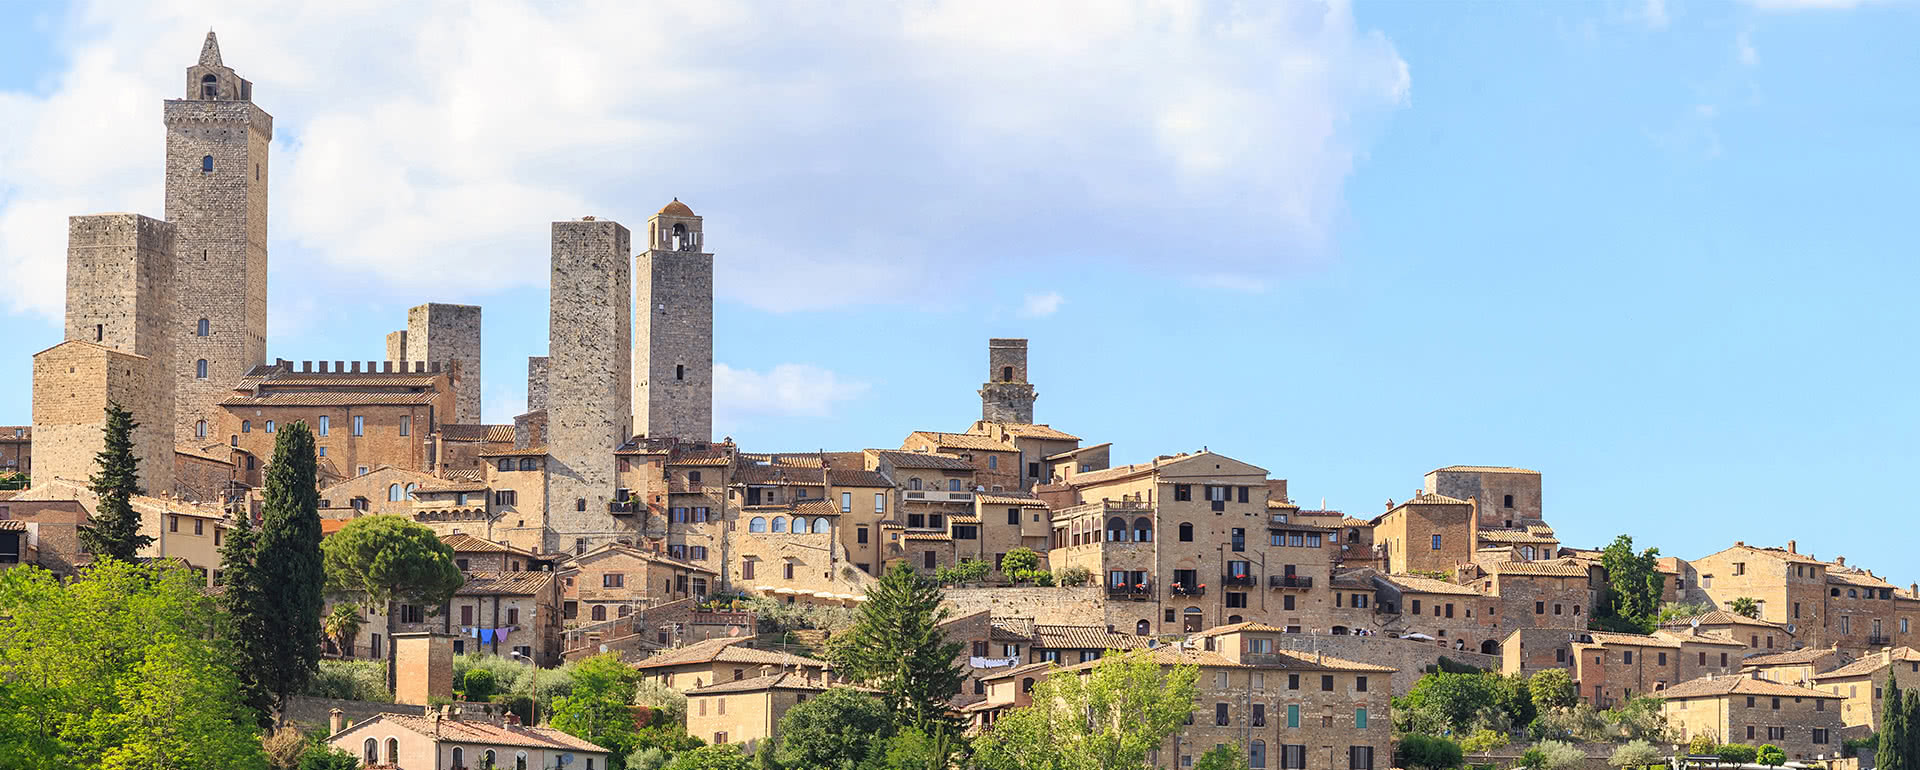 Coverbild von San Gimignano